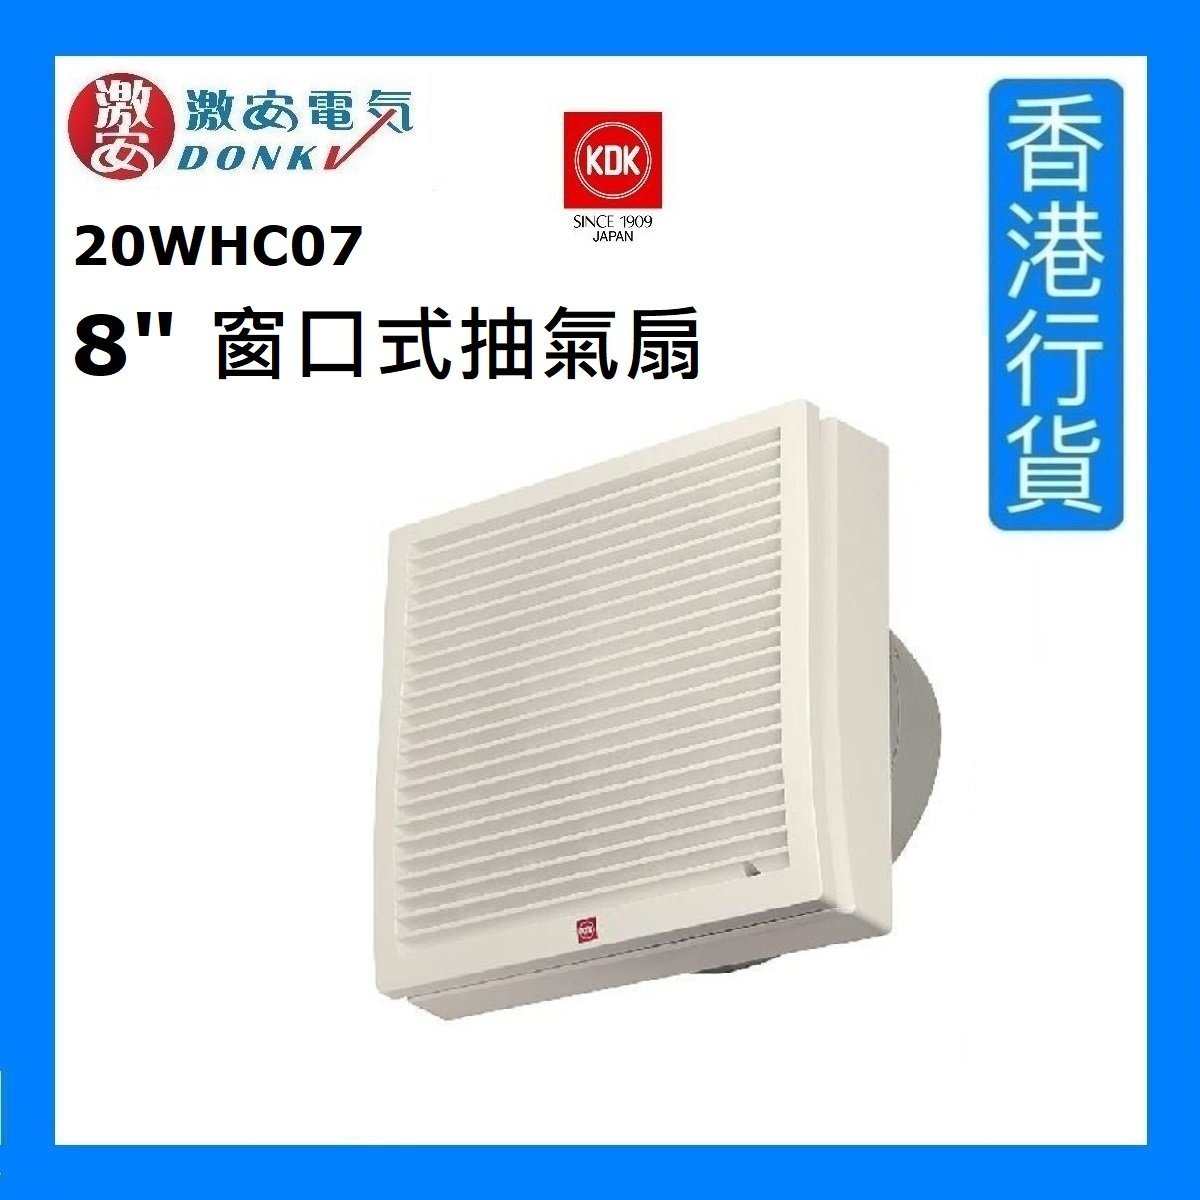 20WHC07 8" 防風雨型窗口式抽氣扇 (8吋 / 20厘米) [香港行貨]